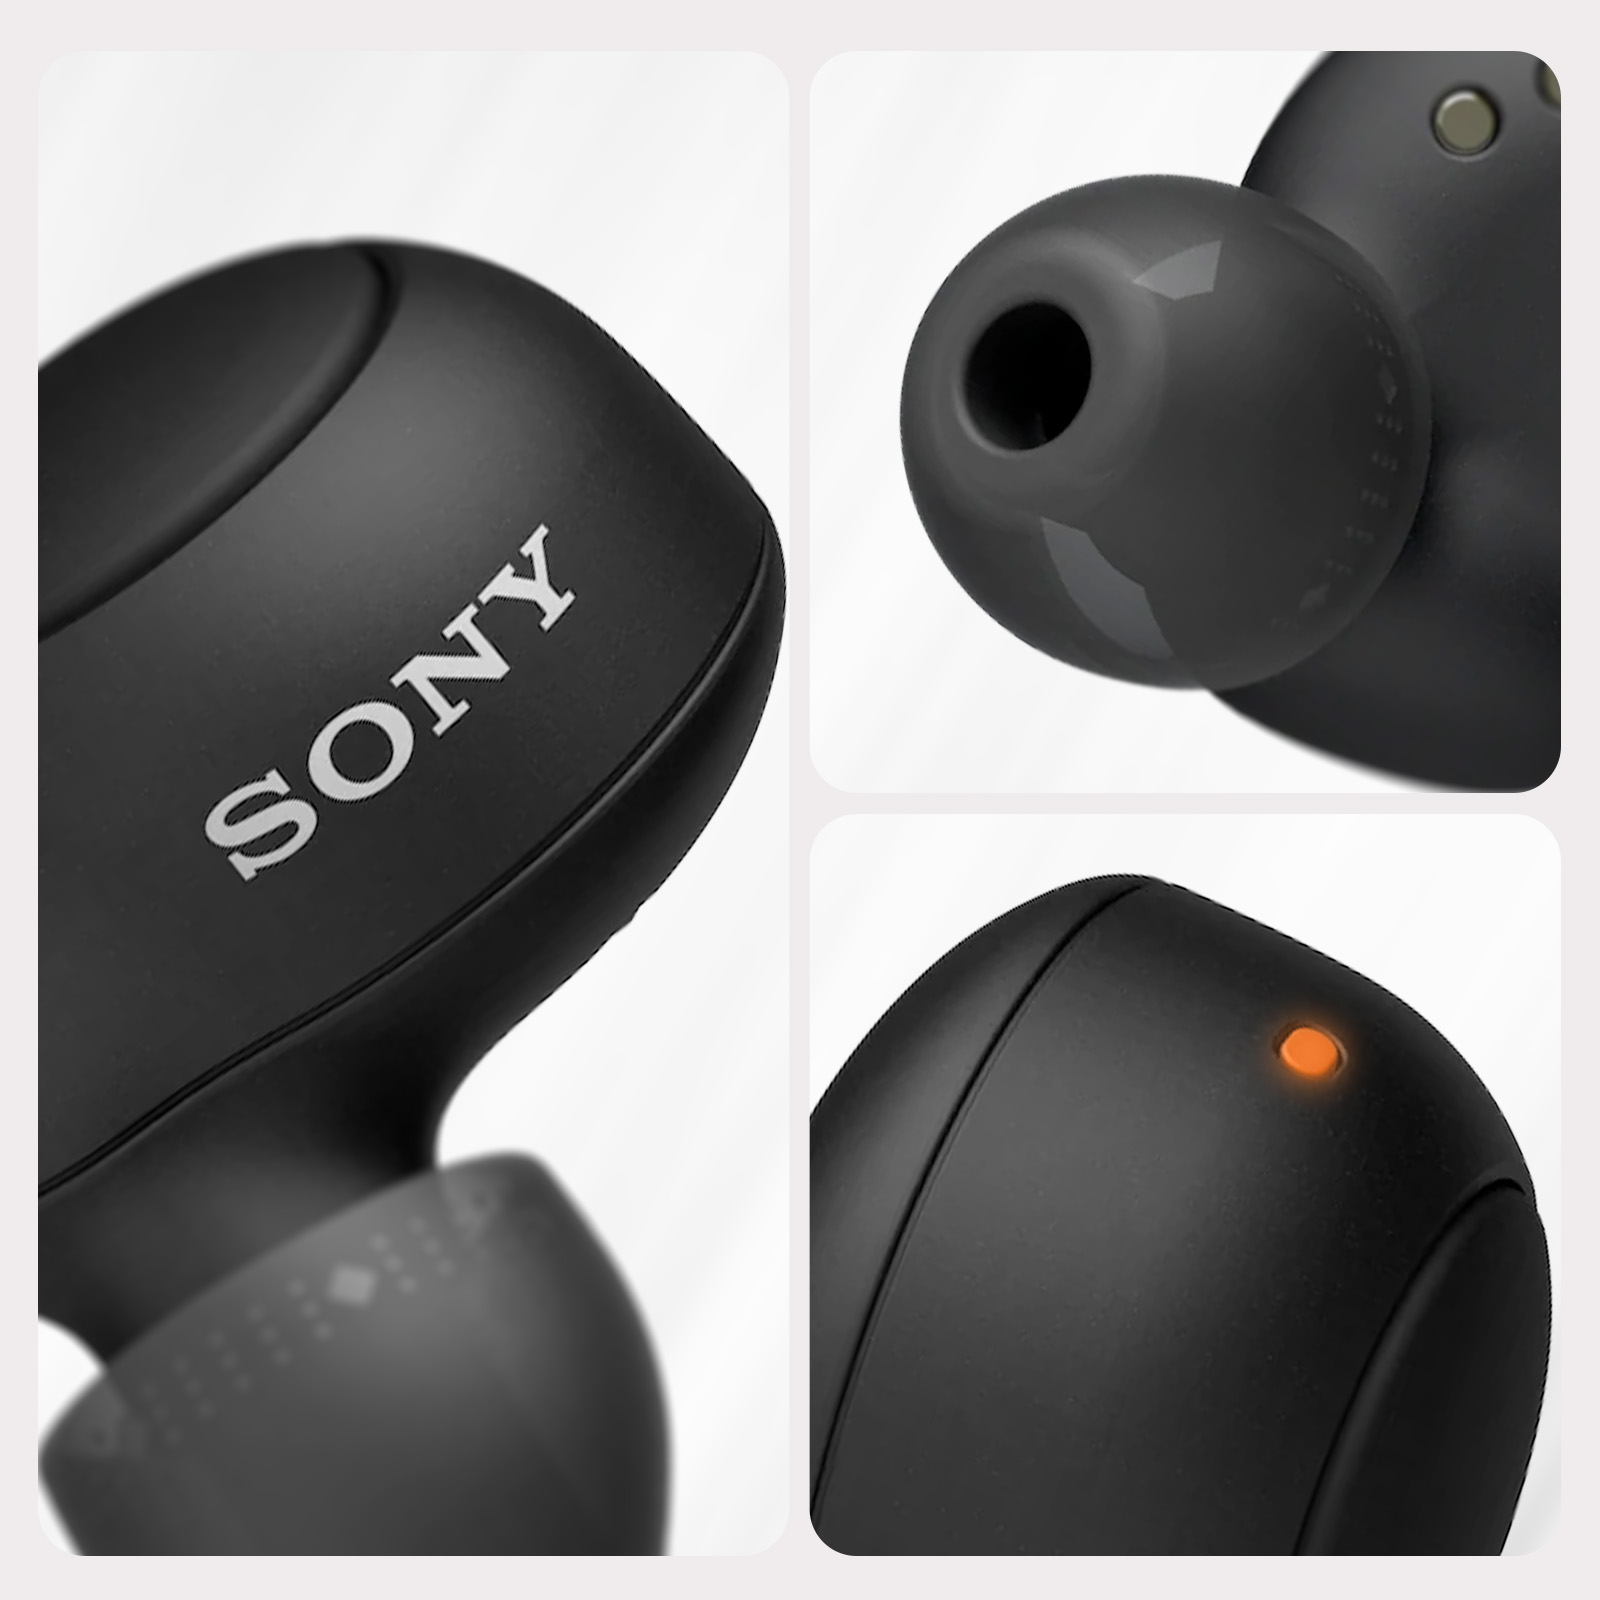 Auriculares inalámbricos originales de Sony, Bluetooth 5.0 con manos  libres, resistentes al agua IPX4 - Negro - Spain